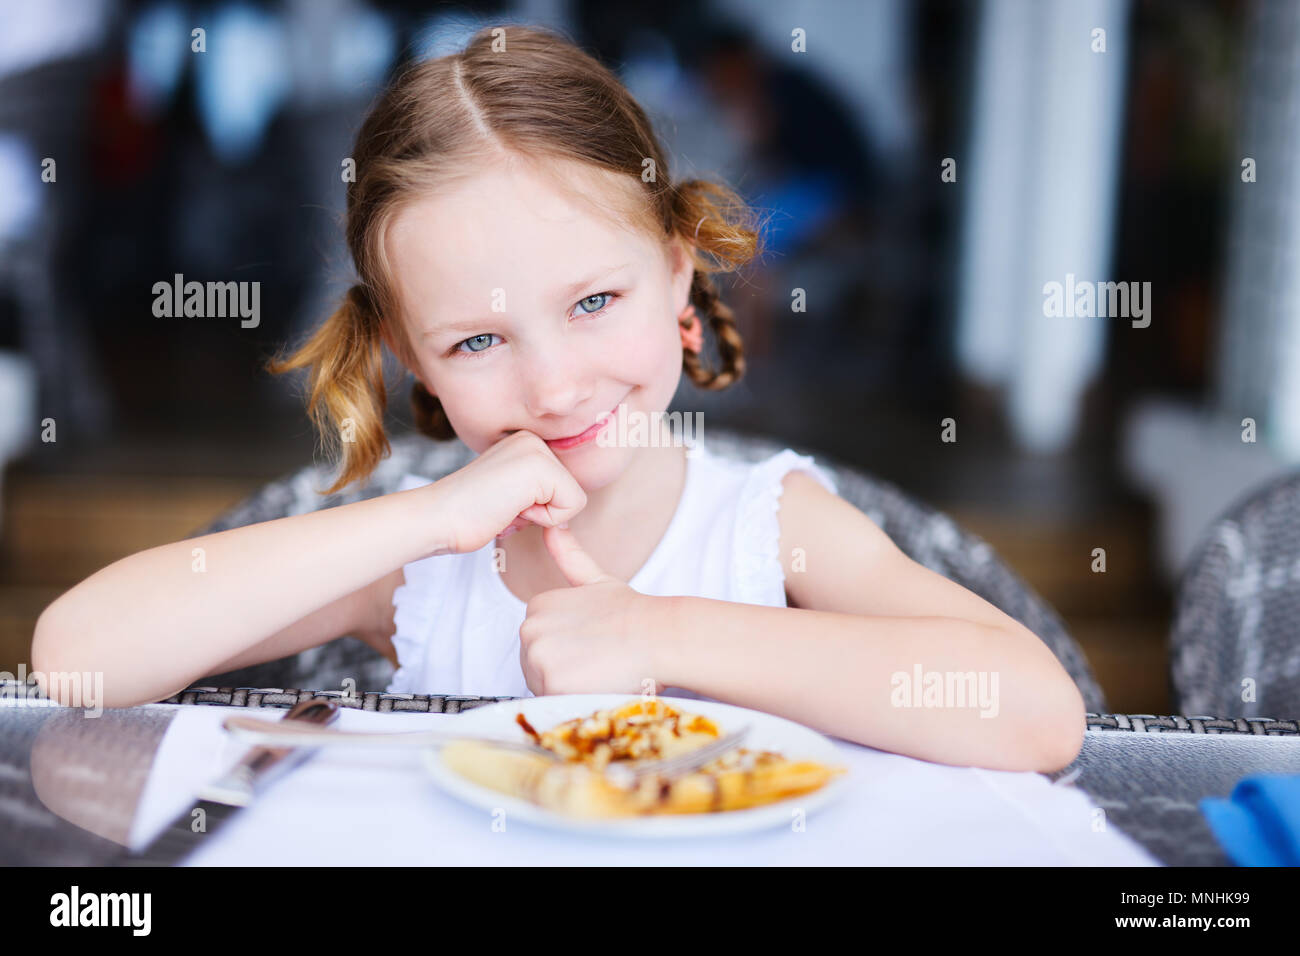 Adorable little girl eating breakfast in restaurant Stock Photo